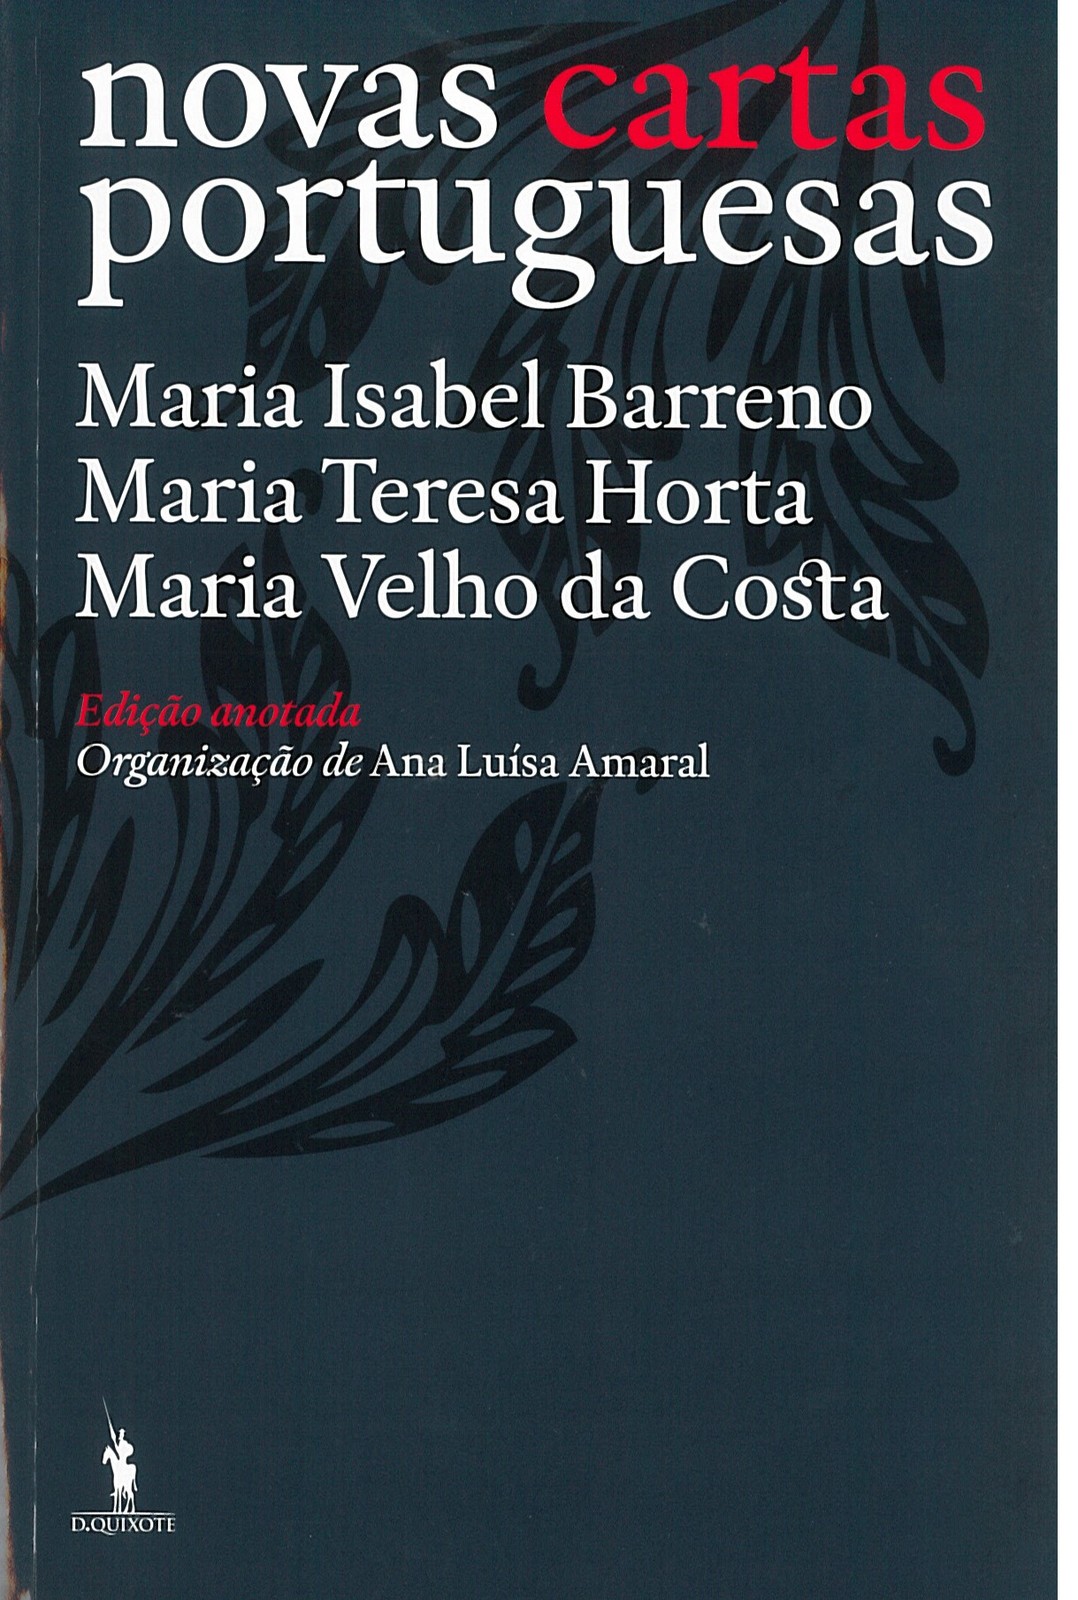  Maria Isabel Barreno, Maria Teresa Horta, Maria Velho da Costa - Novas Cartas Portuguesas